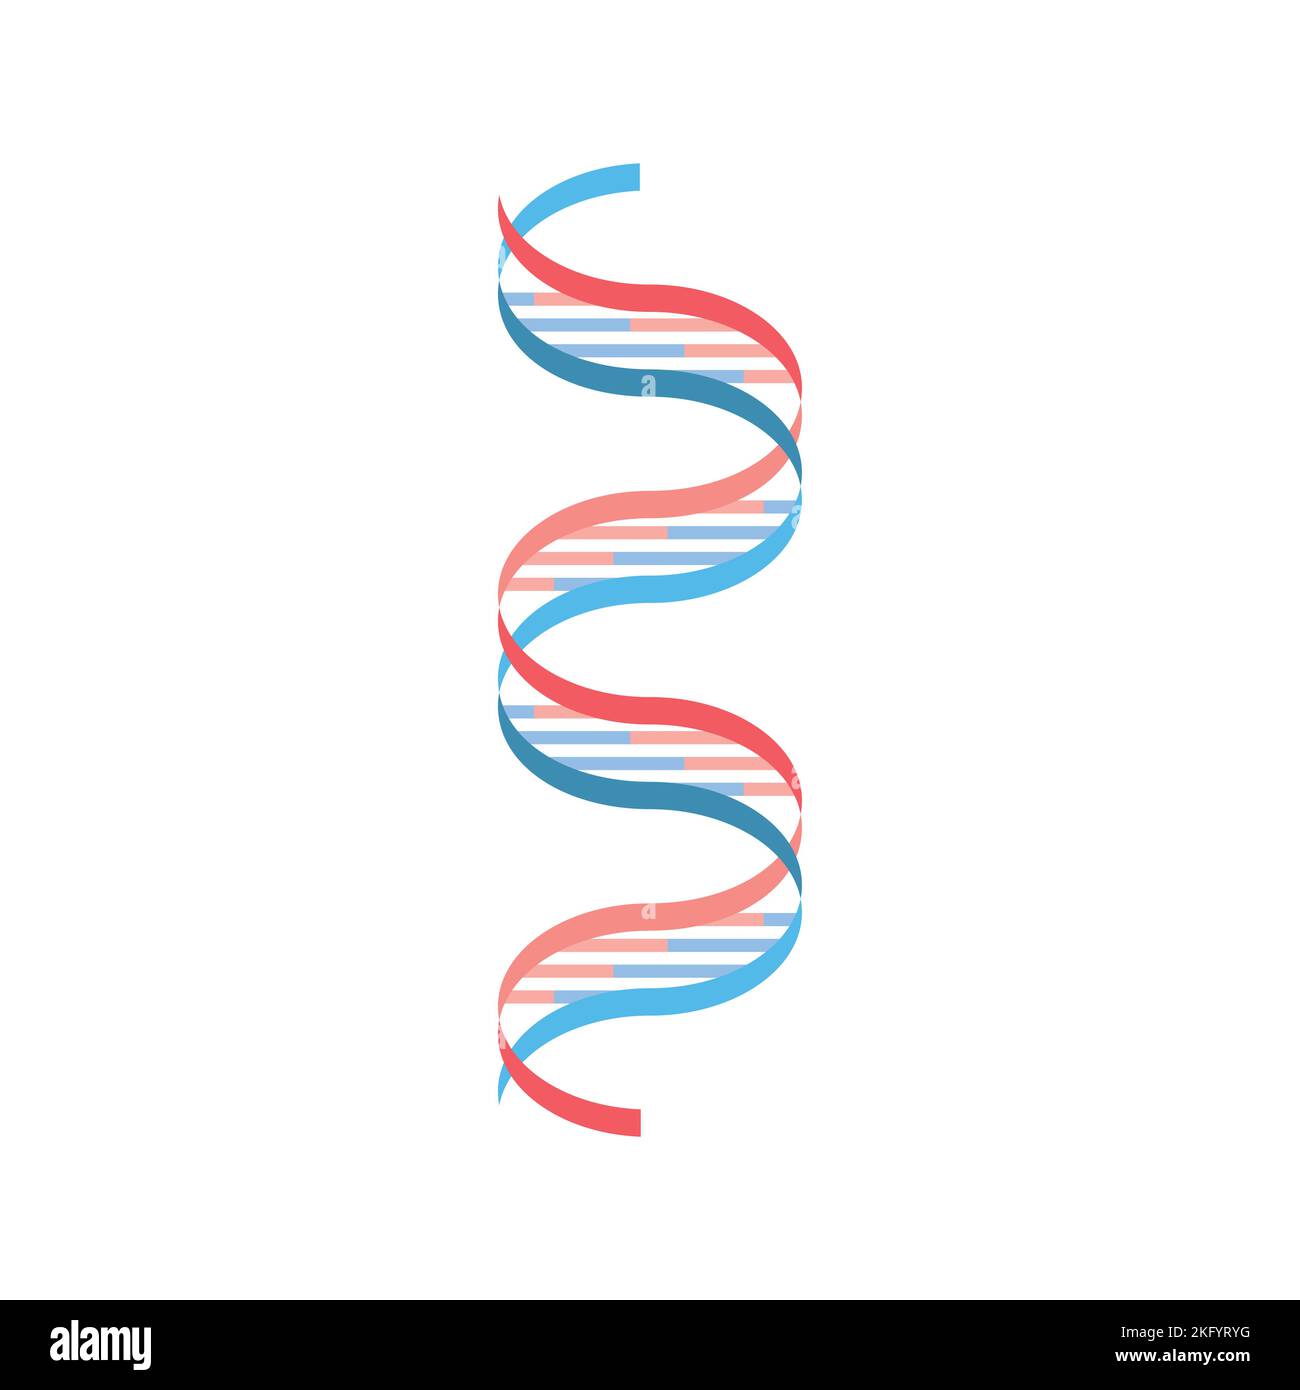 Wissenschaftliche Entwicklung des Watson- und Crick-DNA-Modells. Bunte Symbole. Vektorgrafik. Stock Vektor